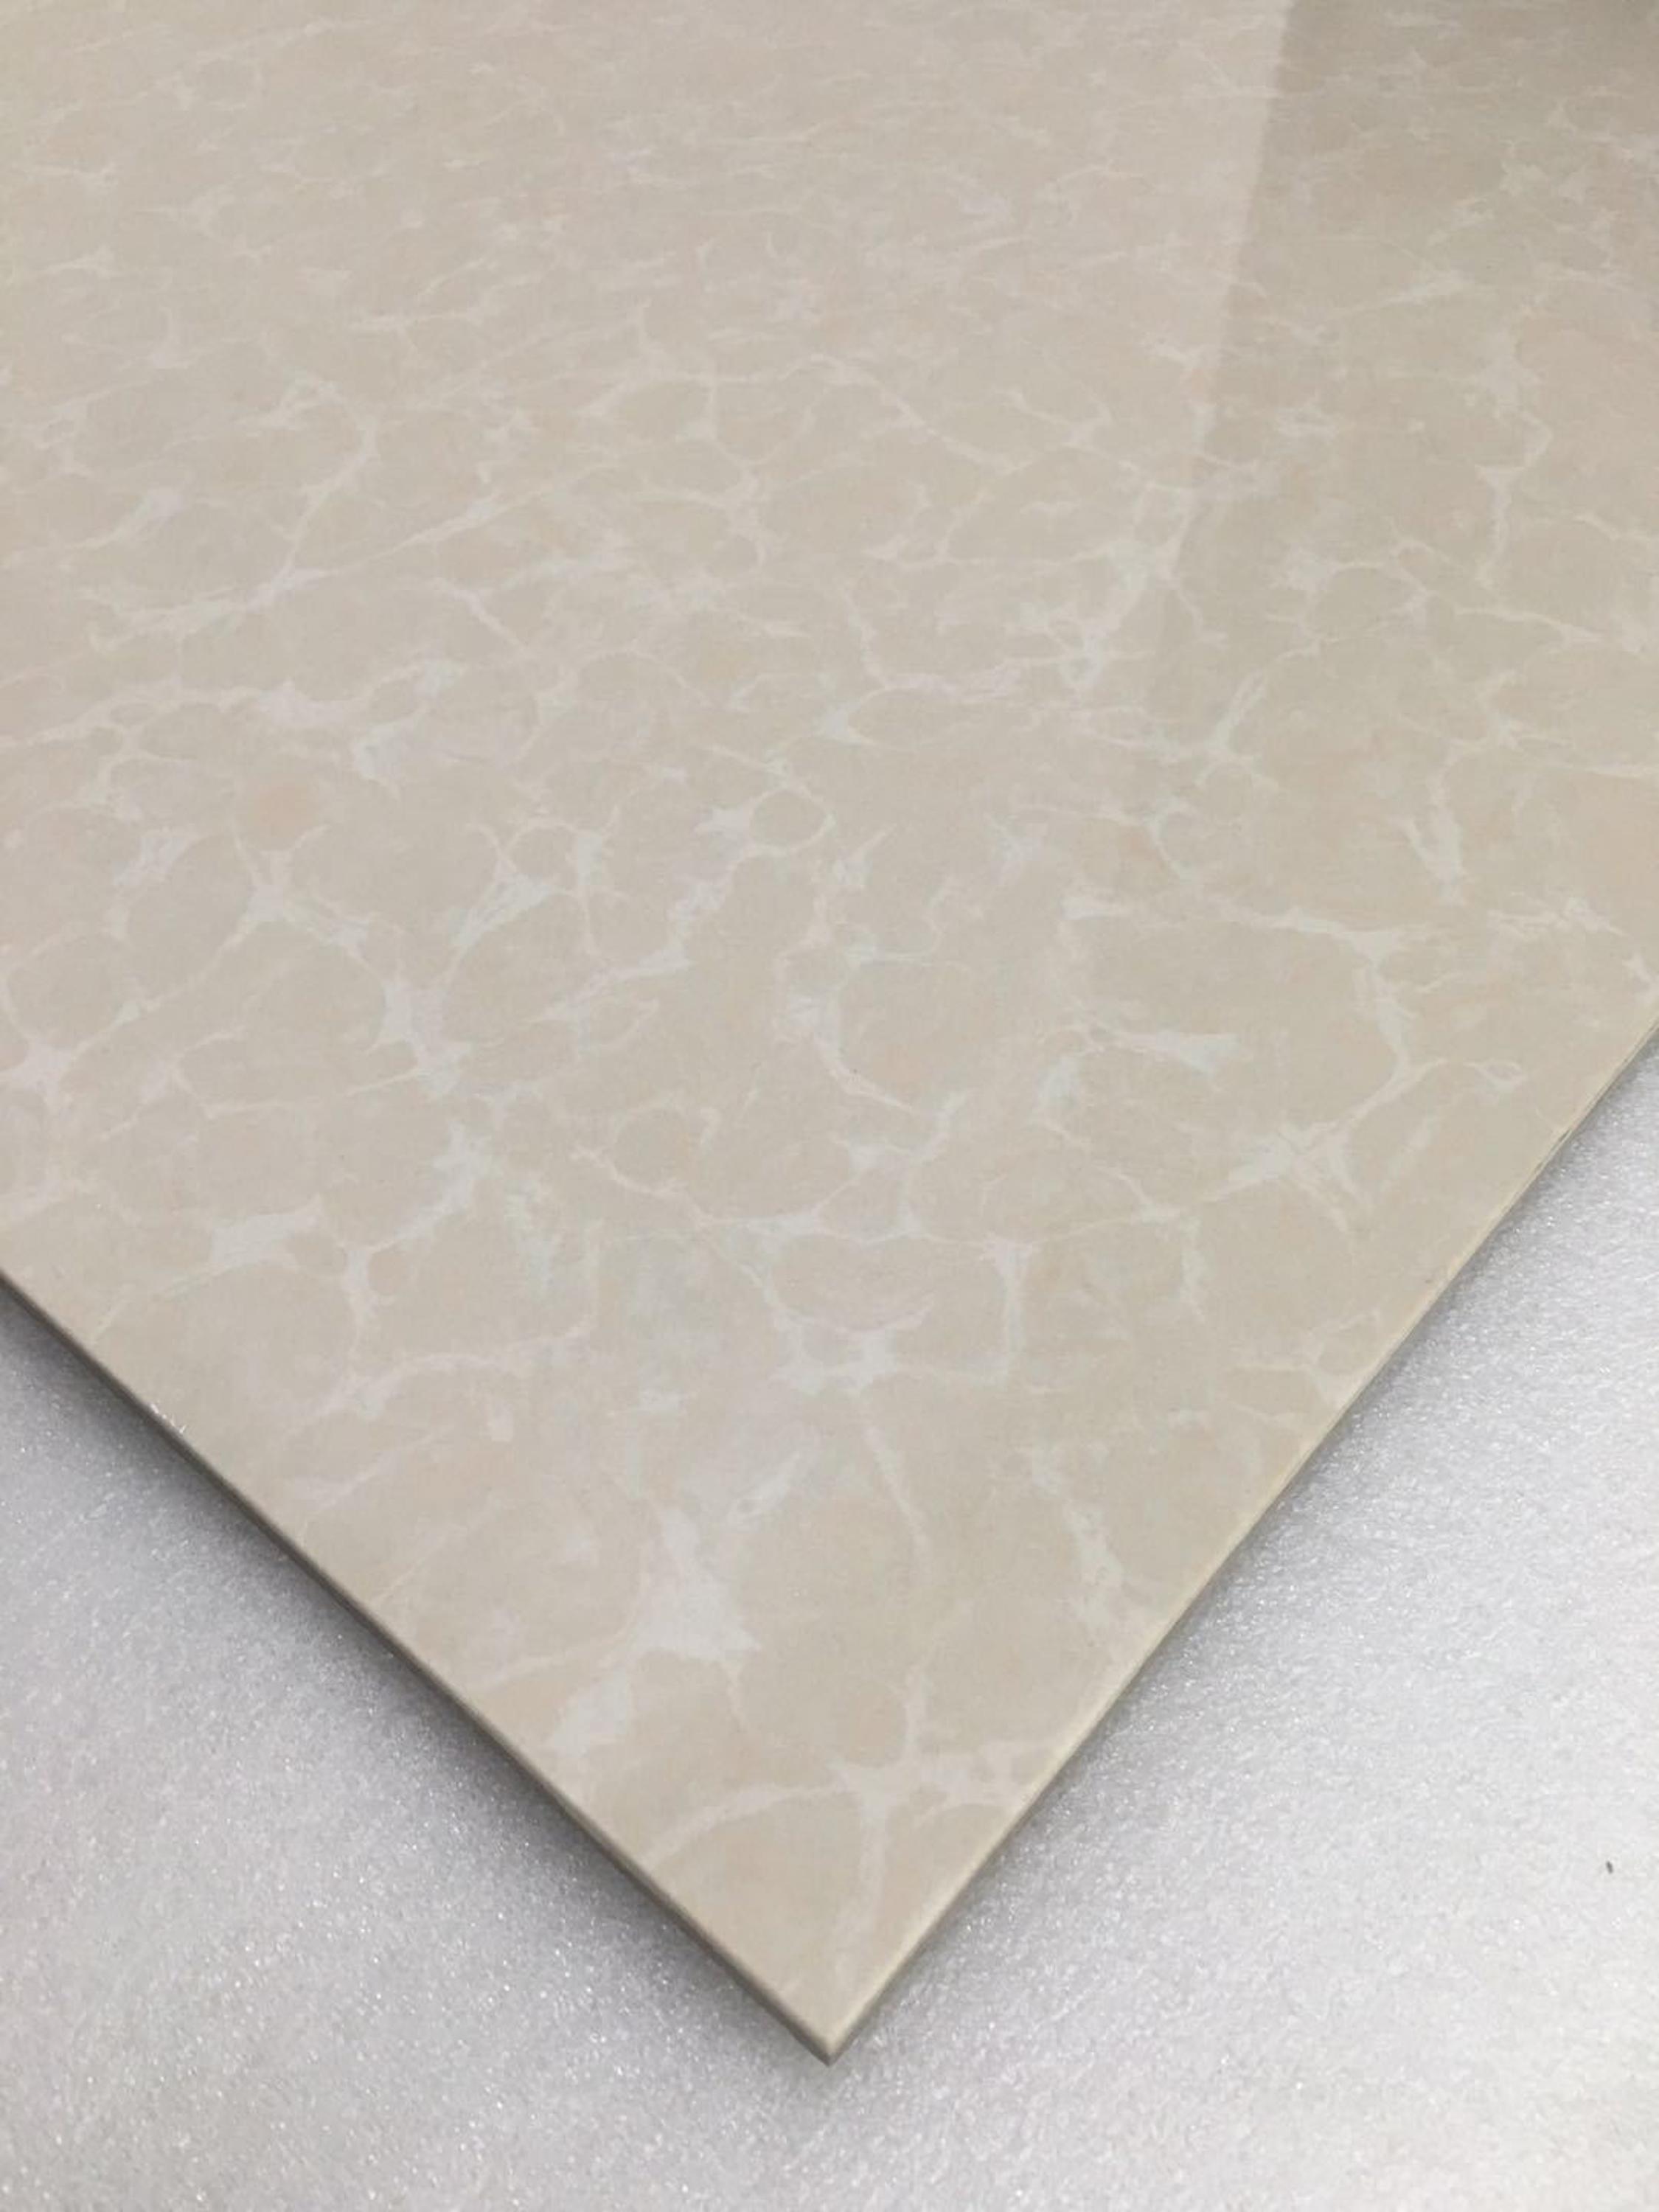 Polished Glazed Floor Tiles Ceramic Porcelain